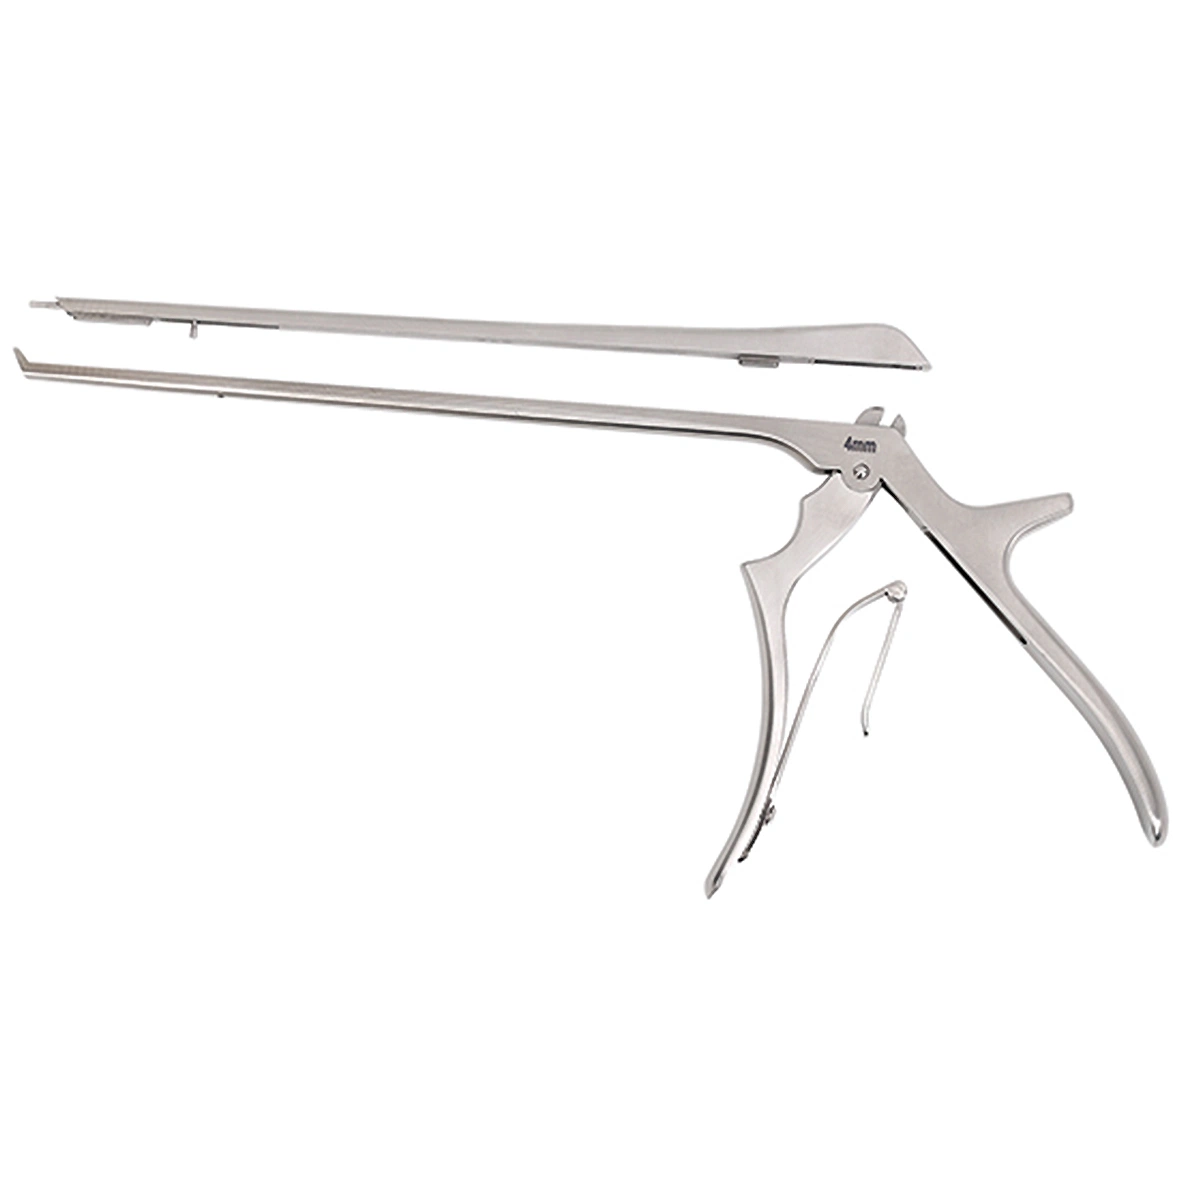 XC médico Laminectomía de buena calidad rongeur (desmontado) Cirugía ortopédica básica Instrumentos